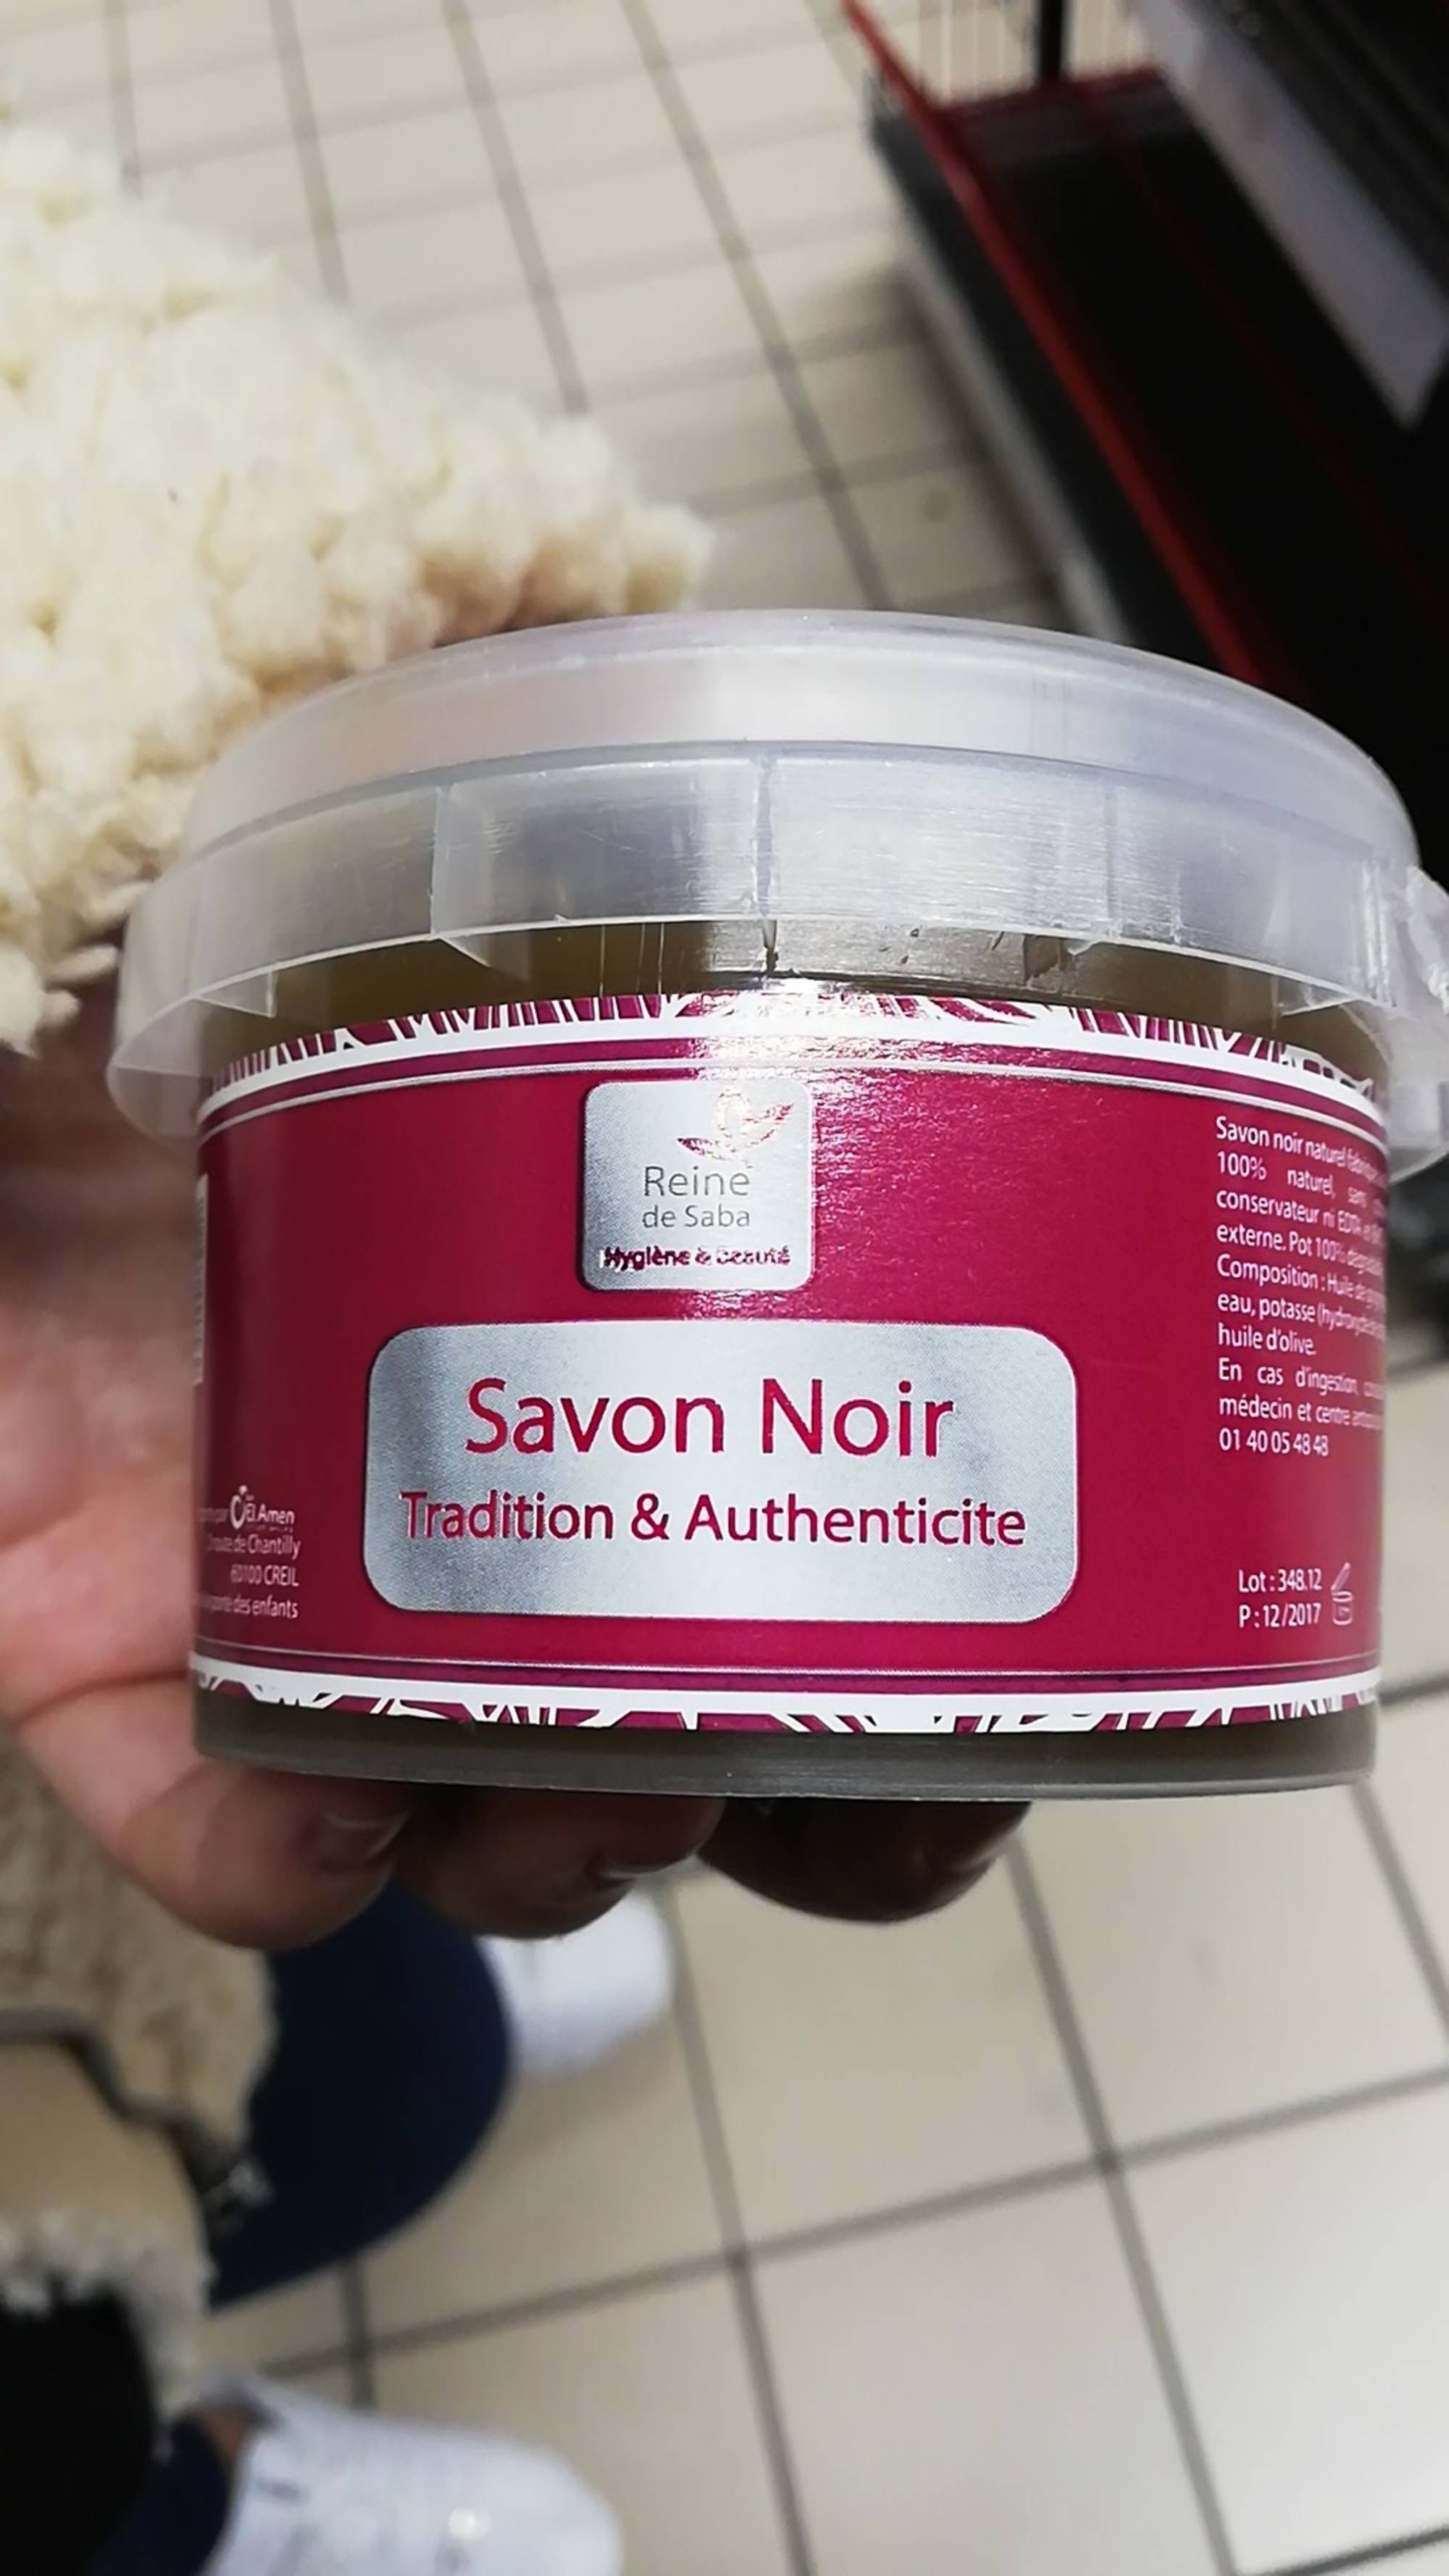 REINE DE SABA - Tradition & authenticité - Savon noir